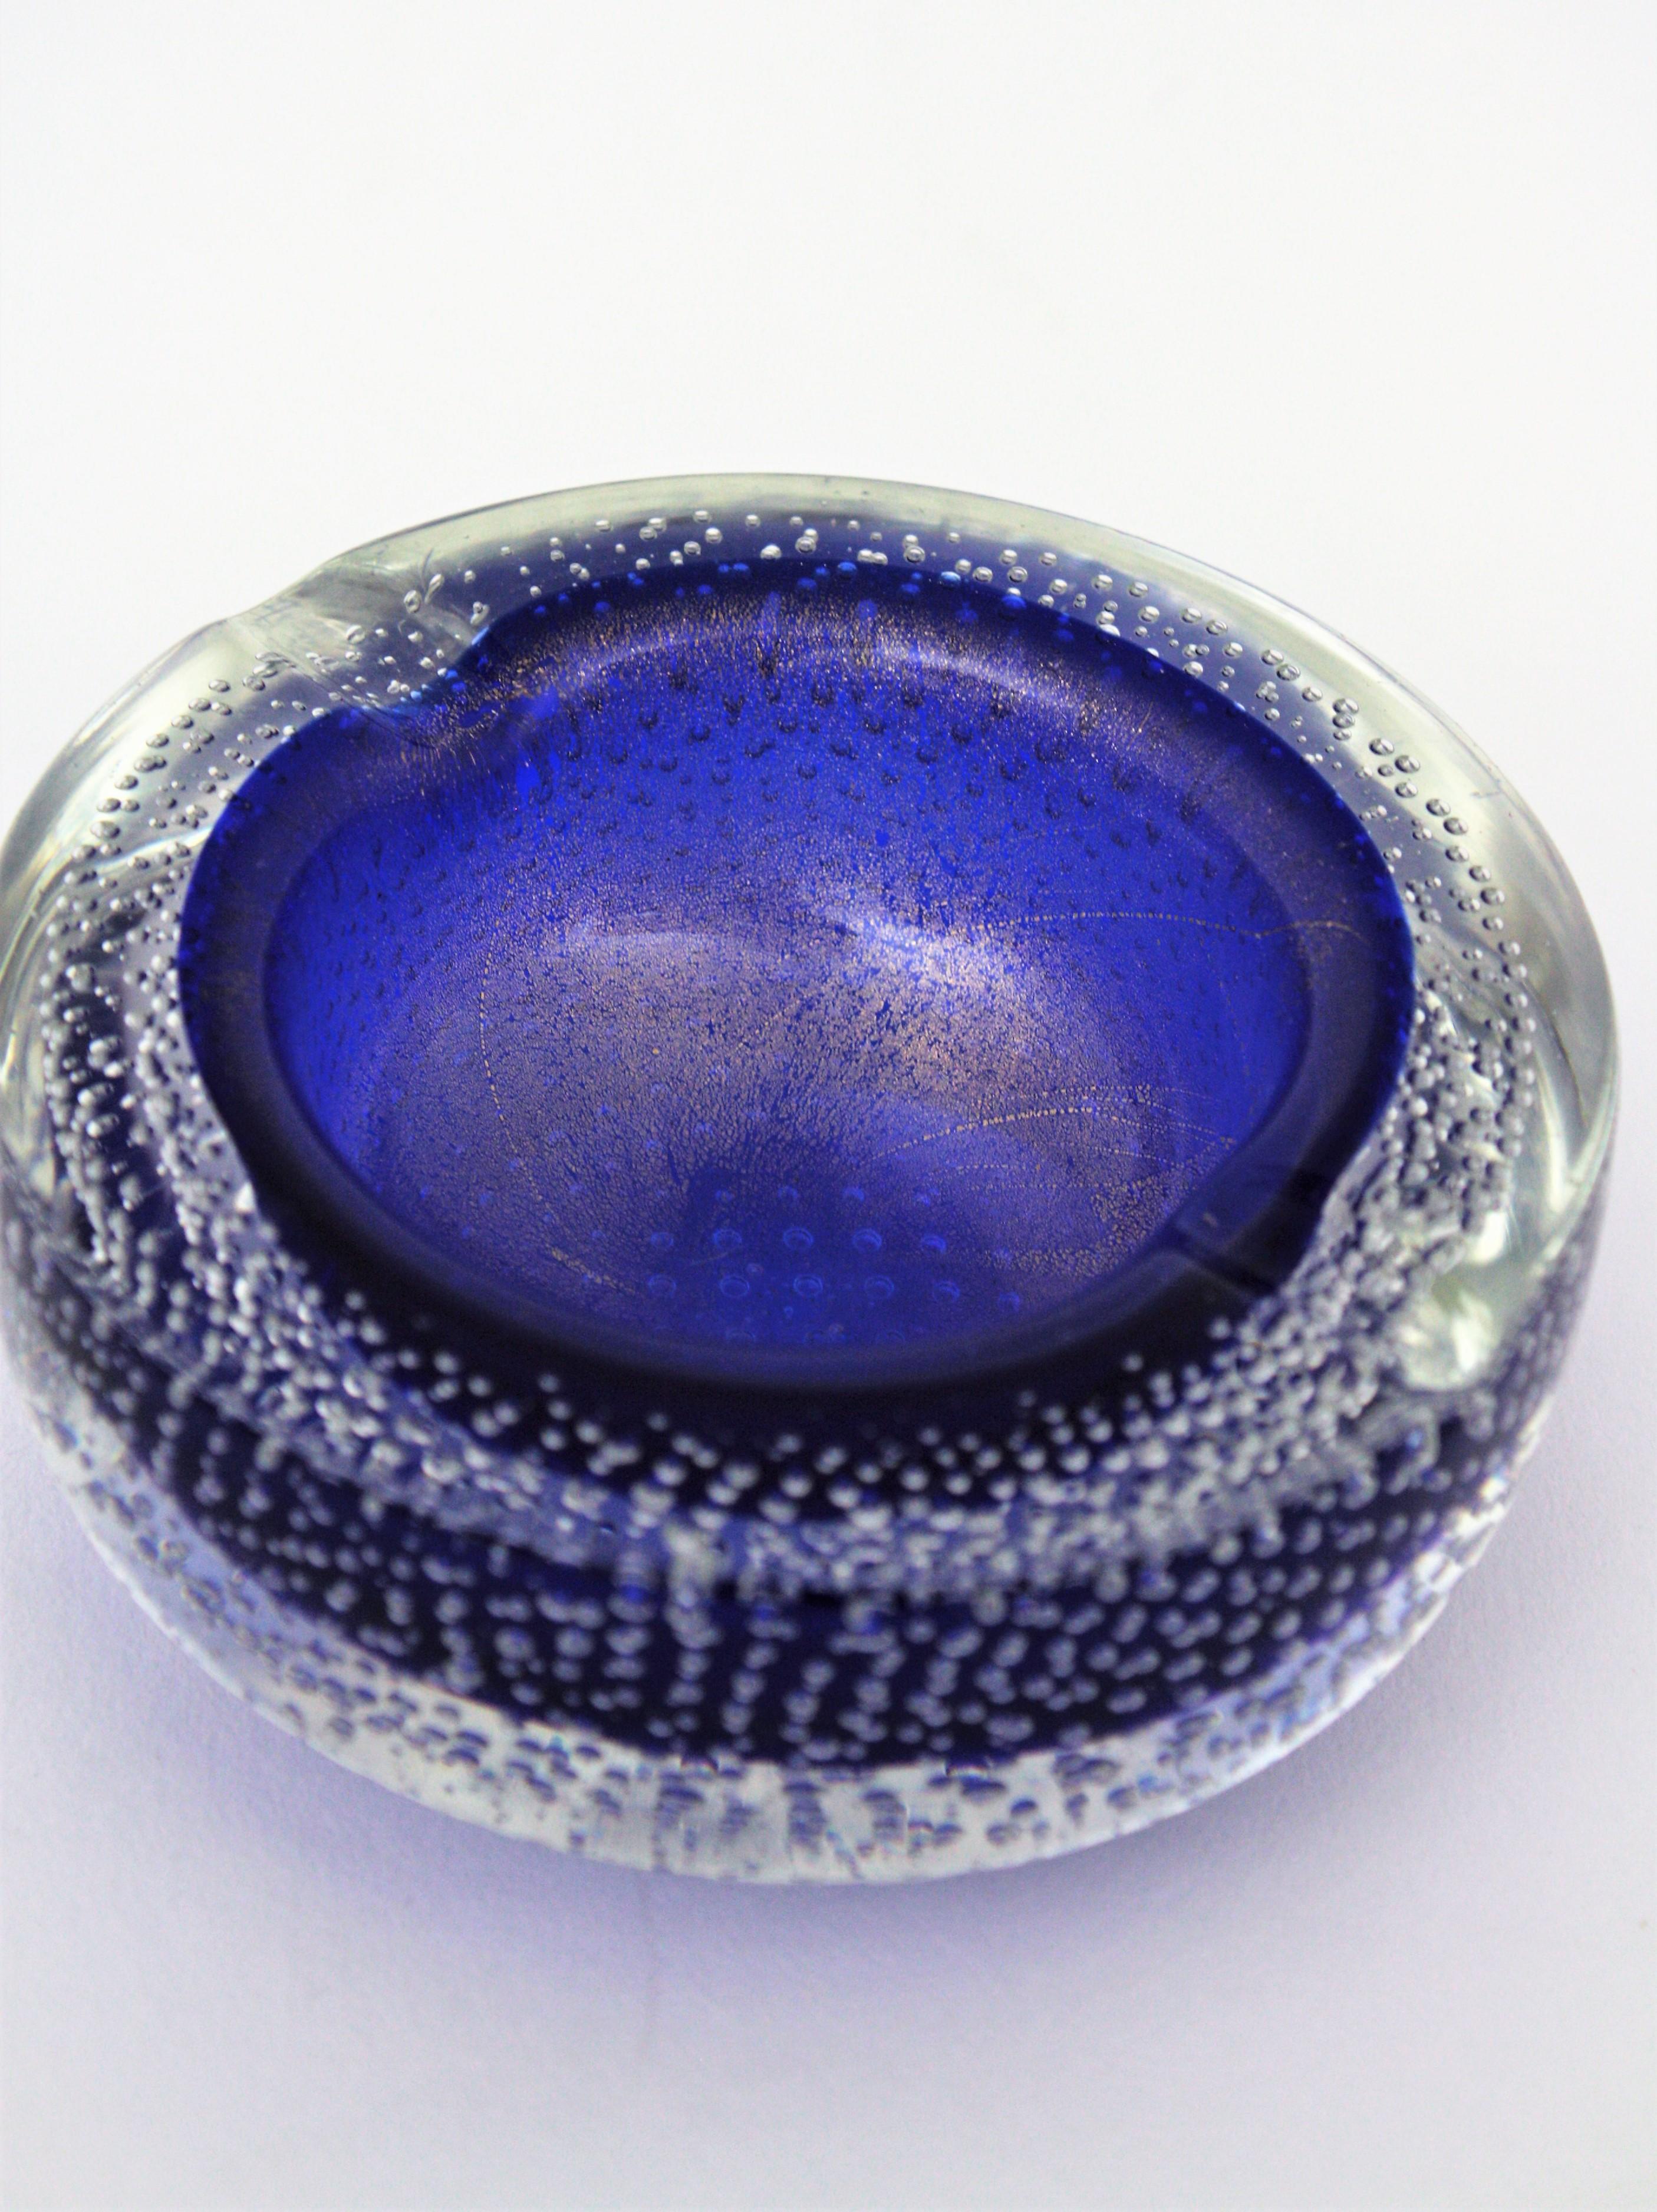 Seguso Vetri d'Arte Murano Bullicante Blue Art Glass Bowl / Ashtray For Sale 5